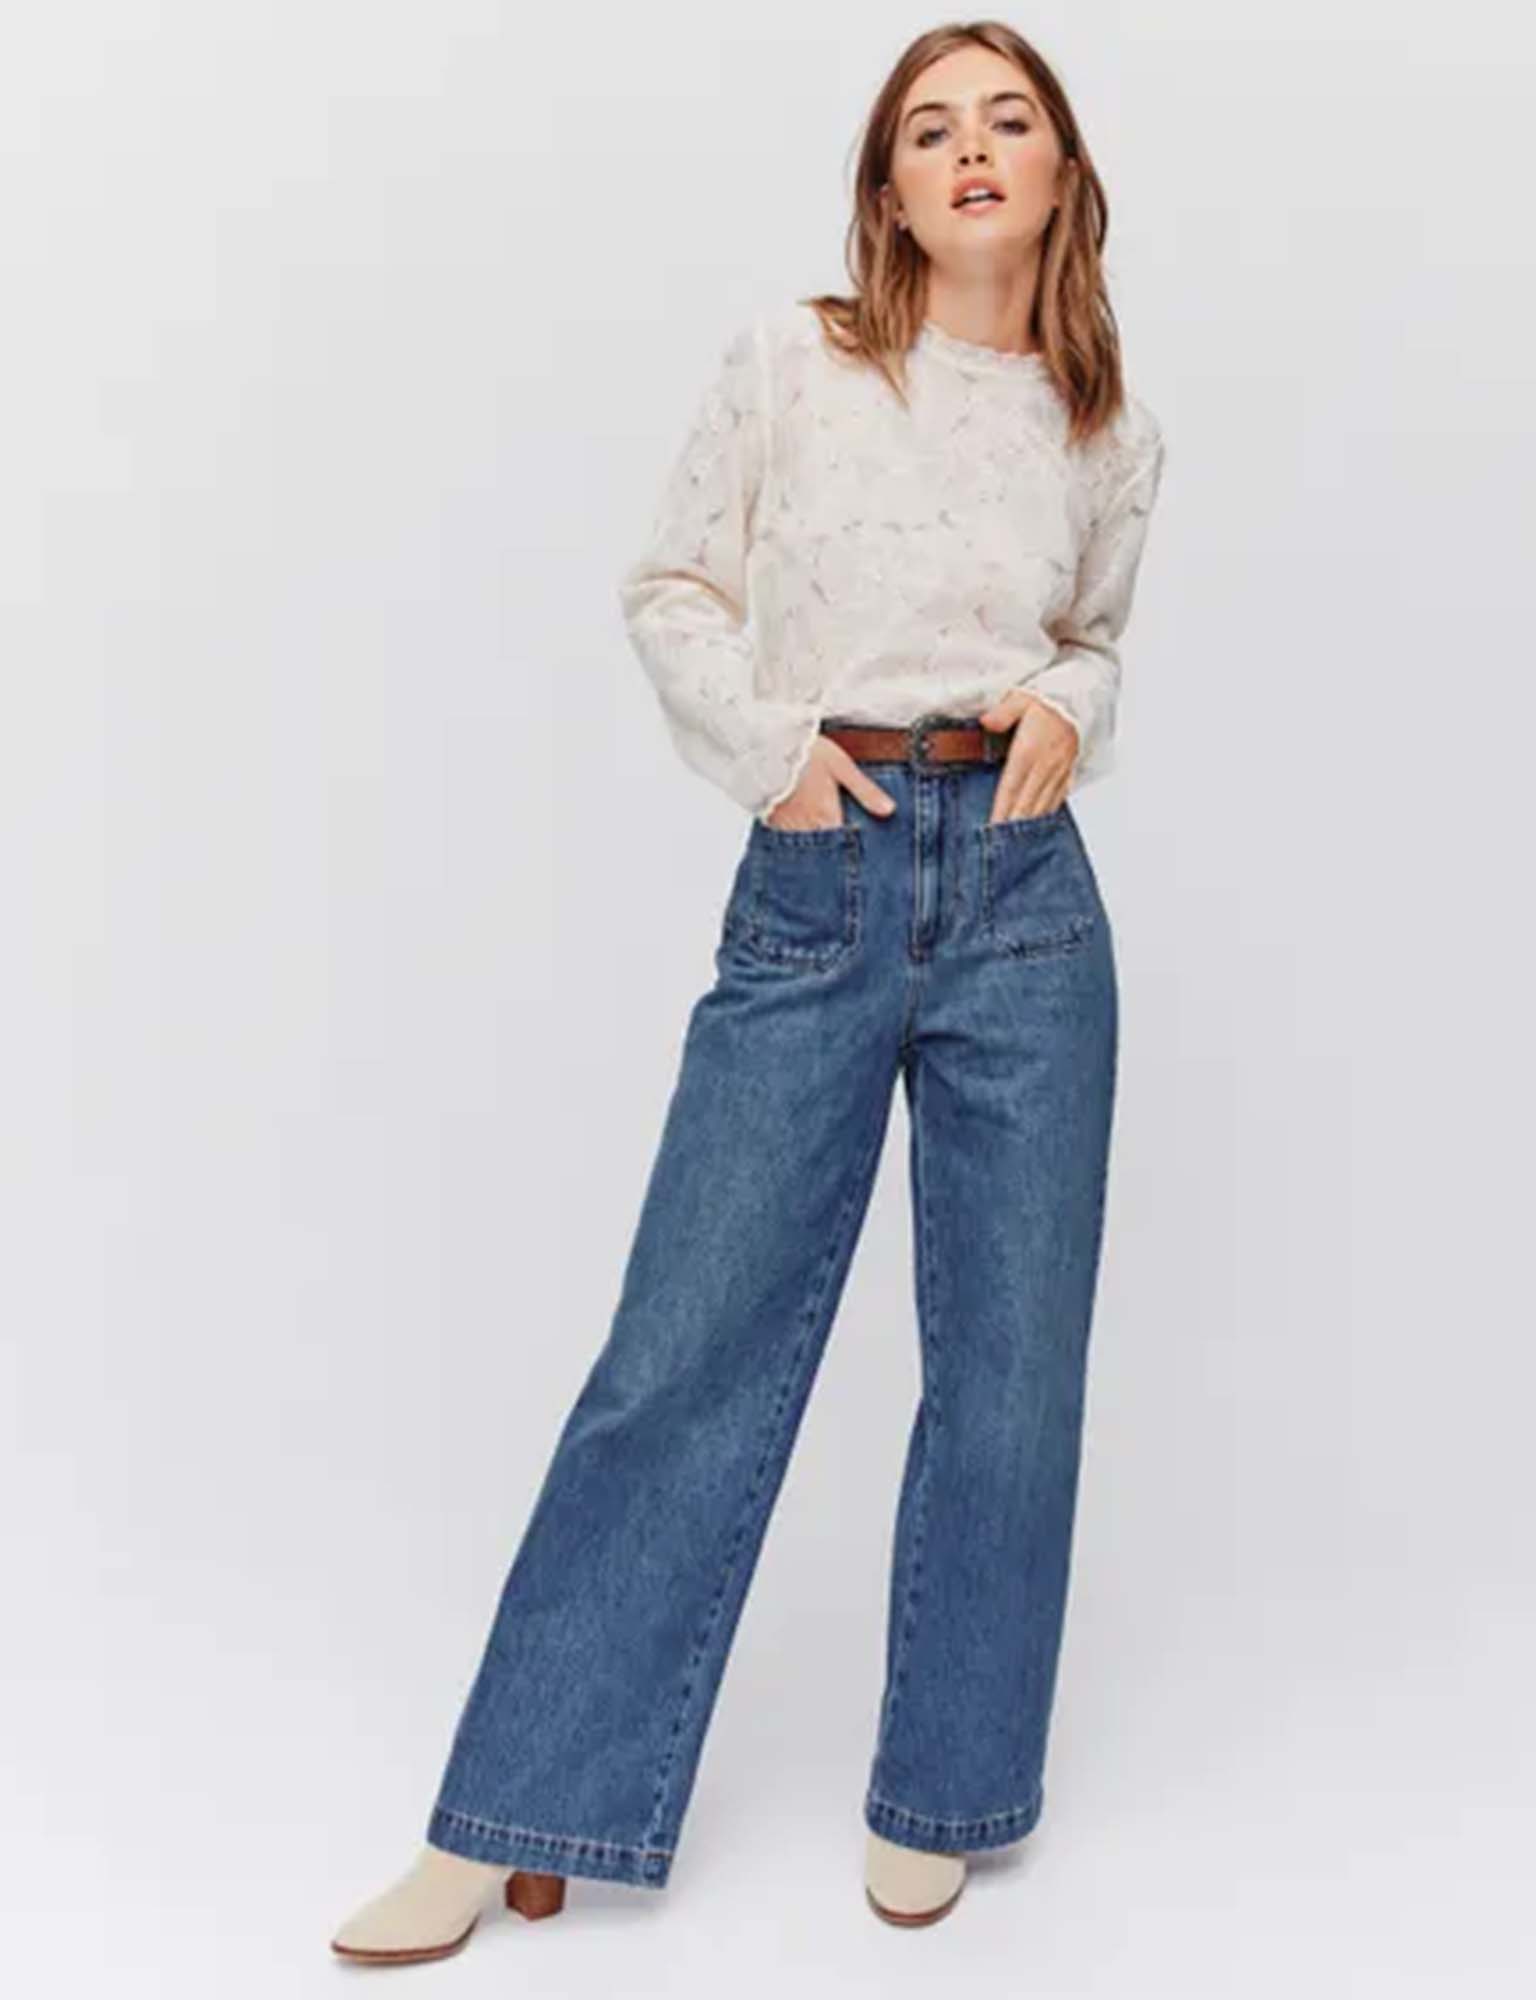 Tendance femme: les jeans continuent de s'élargir en 2023